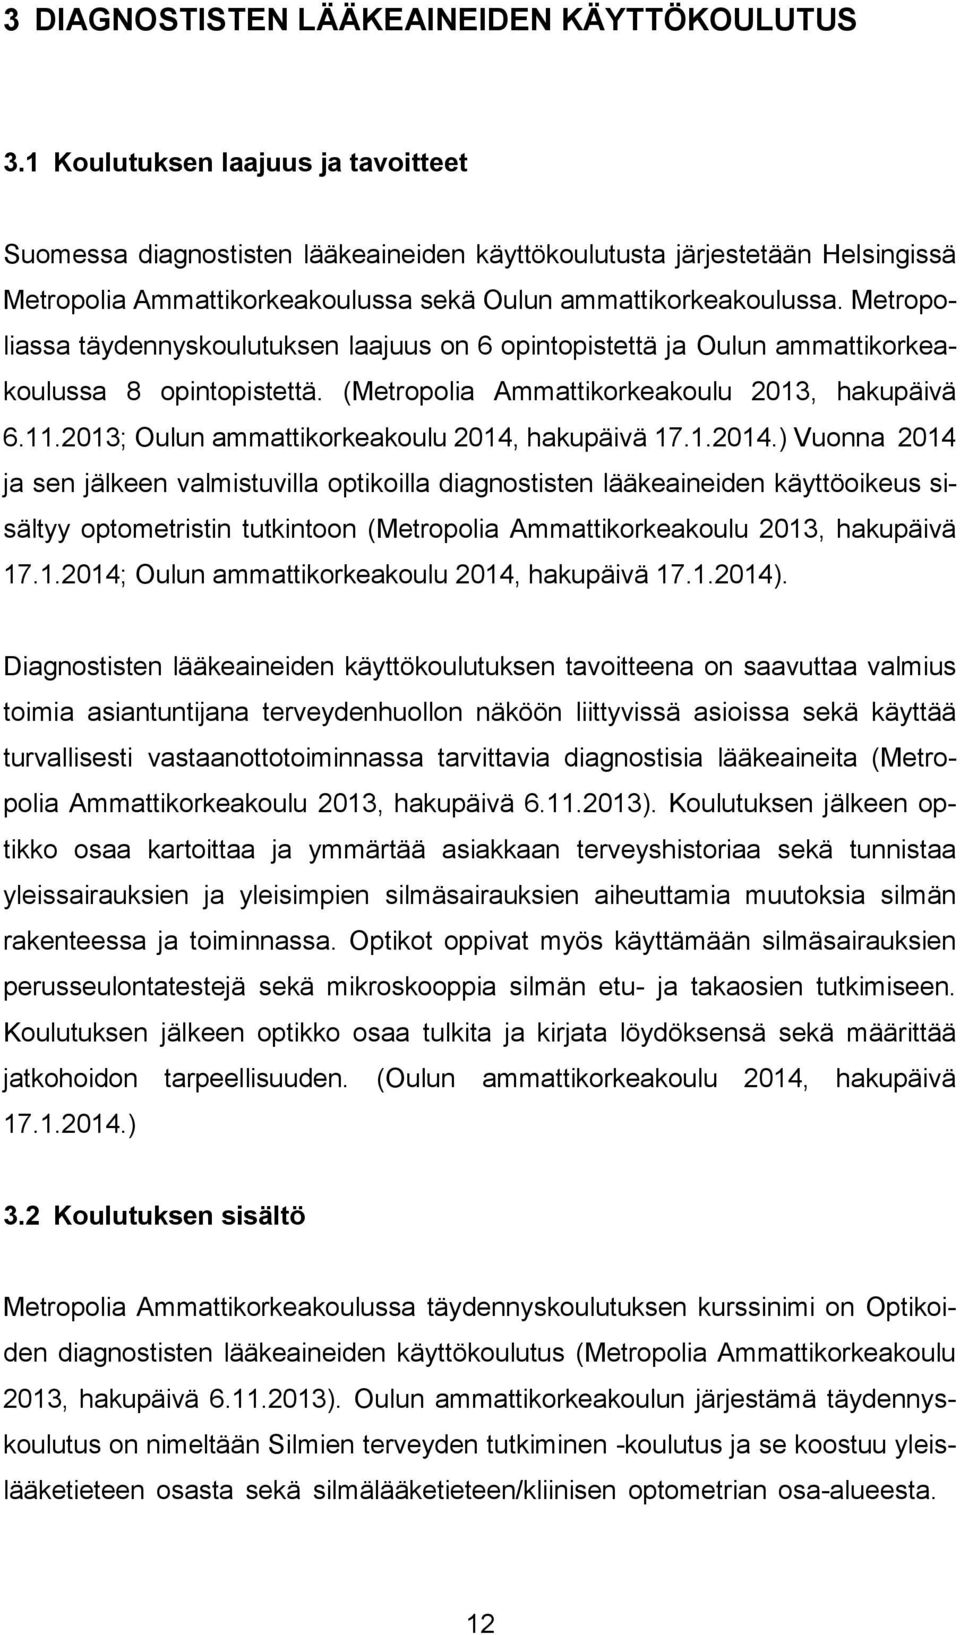 Metropoliassa täydennyskoulutuksen laajuus on 6 opintopistettä ja Oulun ammattikorkeakoulussa 8 opintopistettä. (Metropolia Ammattikorkeakoulu 2013, hakupäivä 6.11.